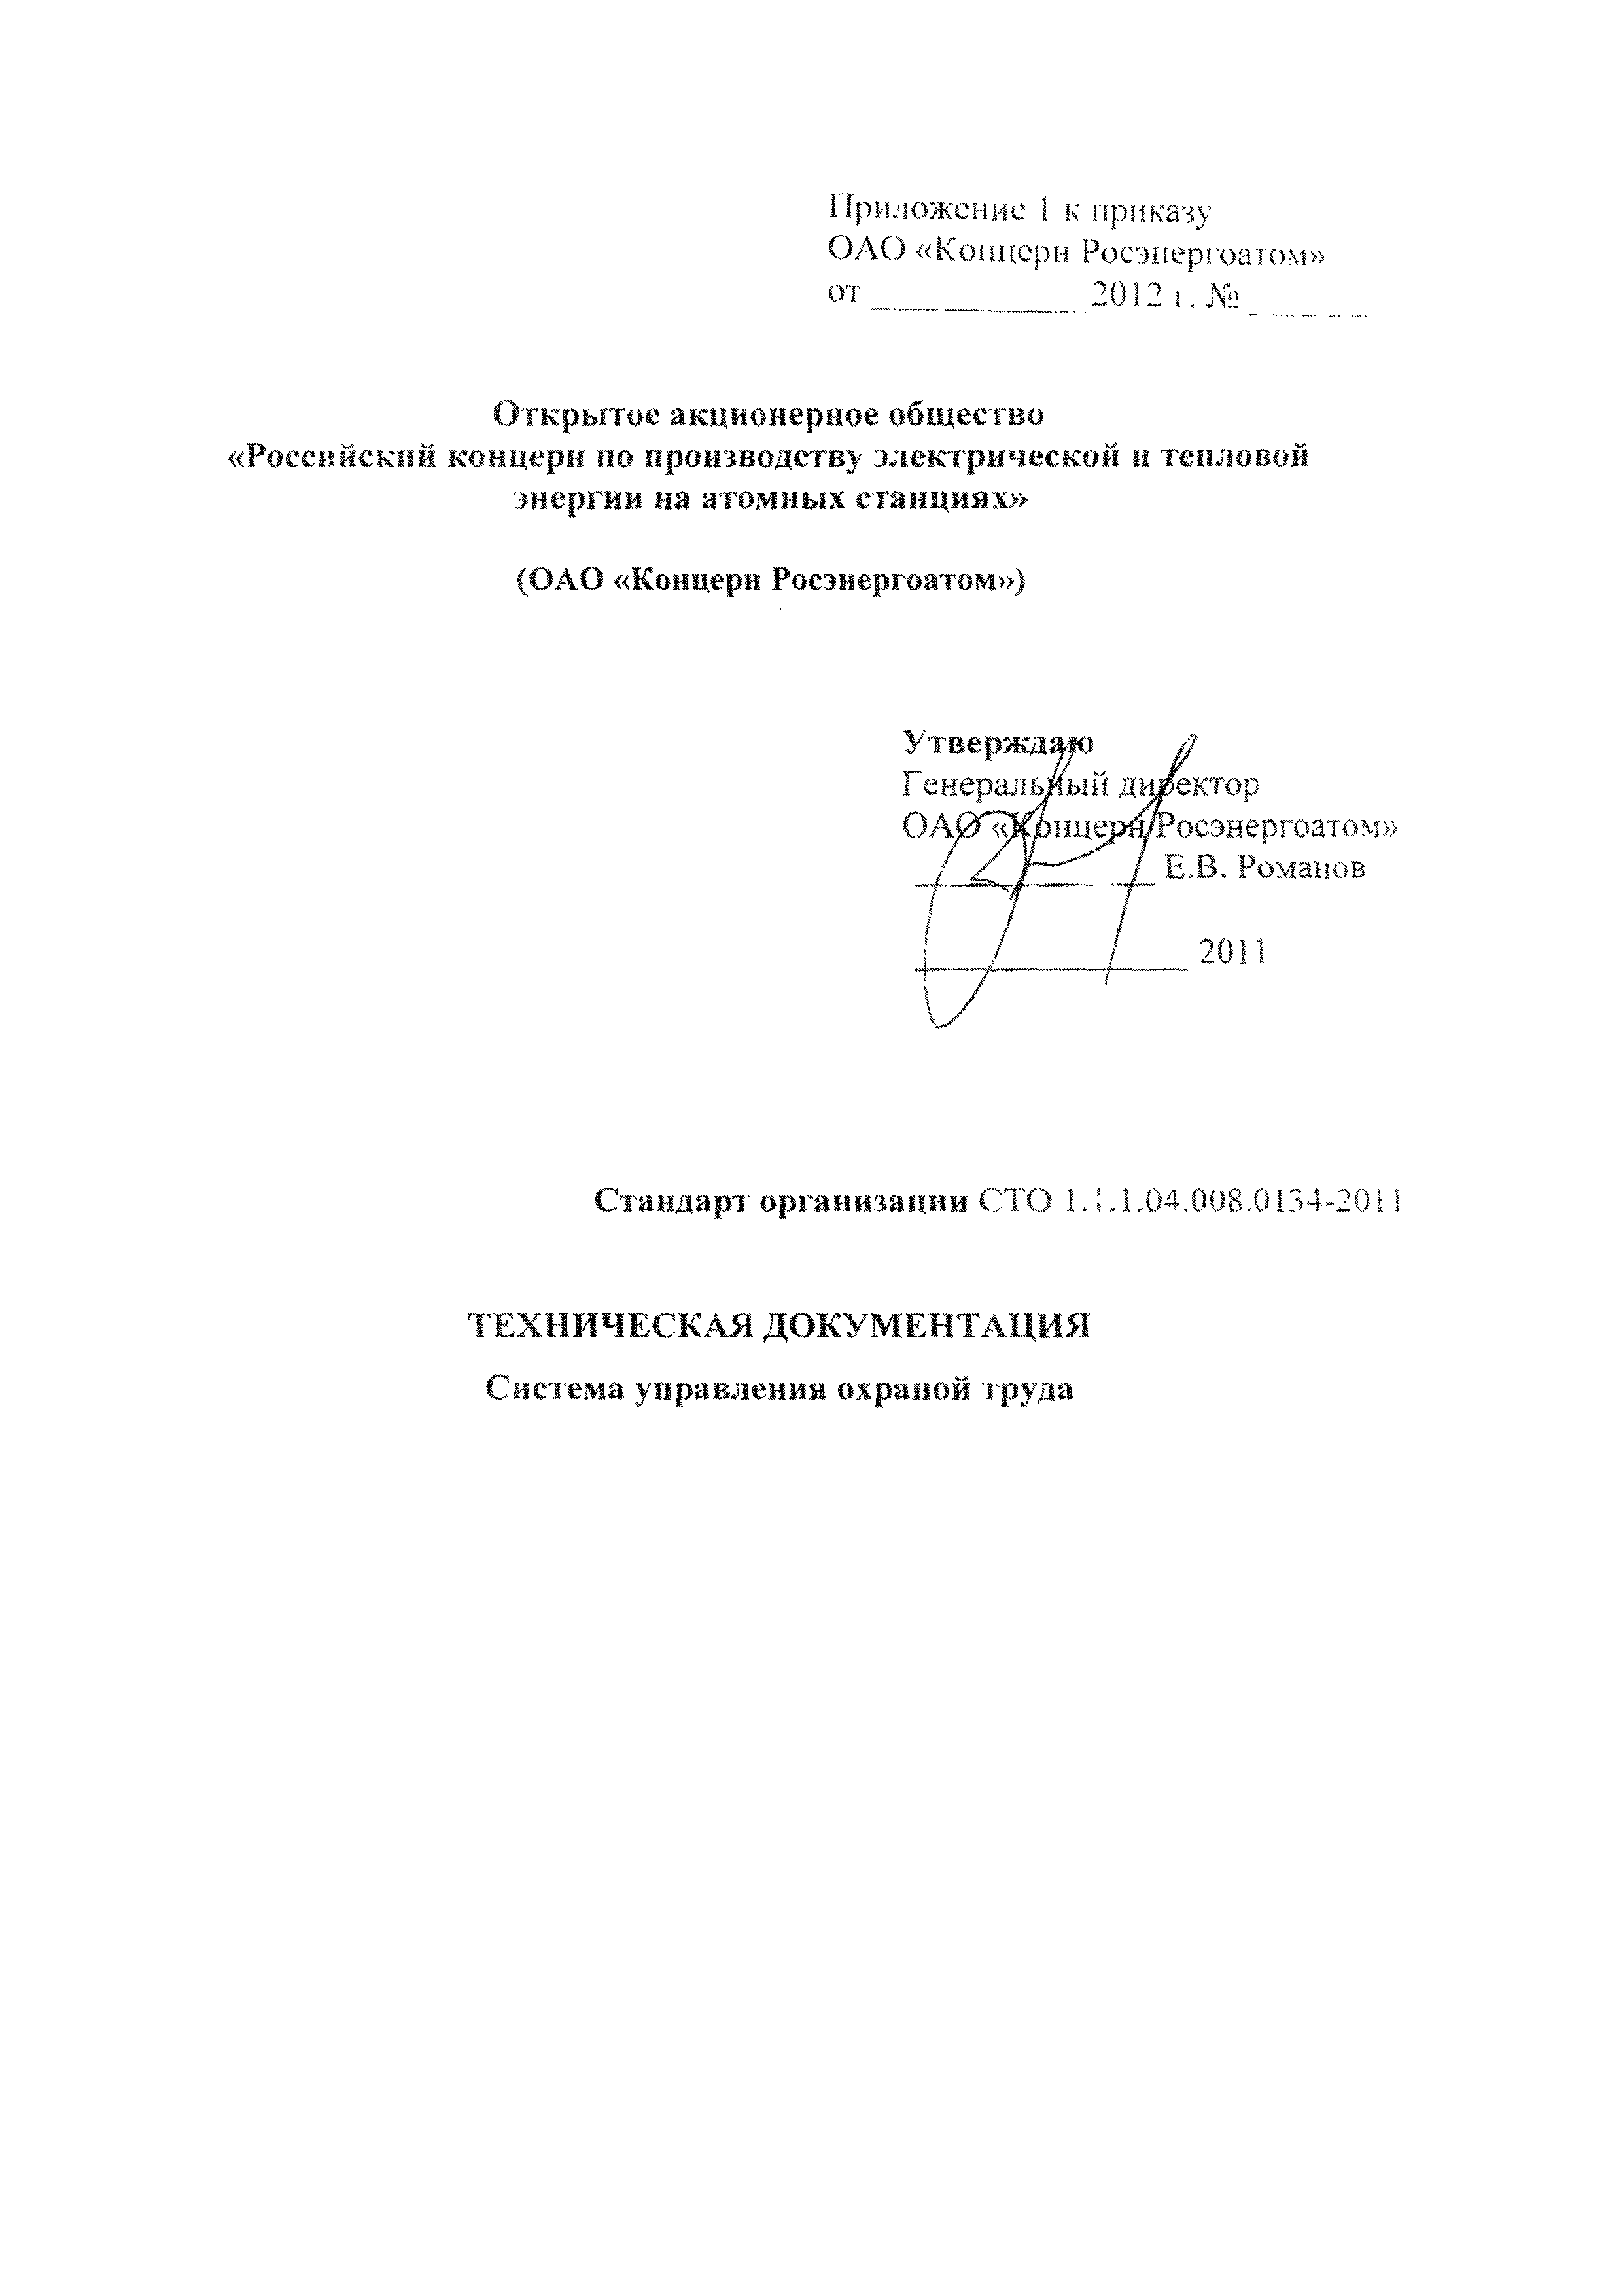 СТО 1.1.1.04.008.0134-2011